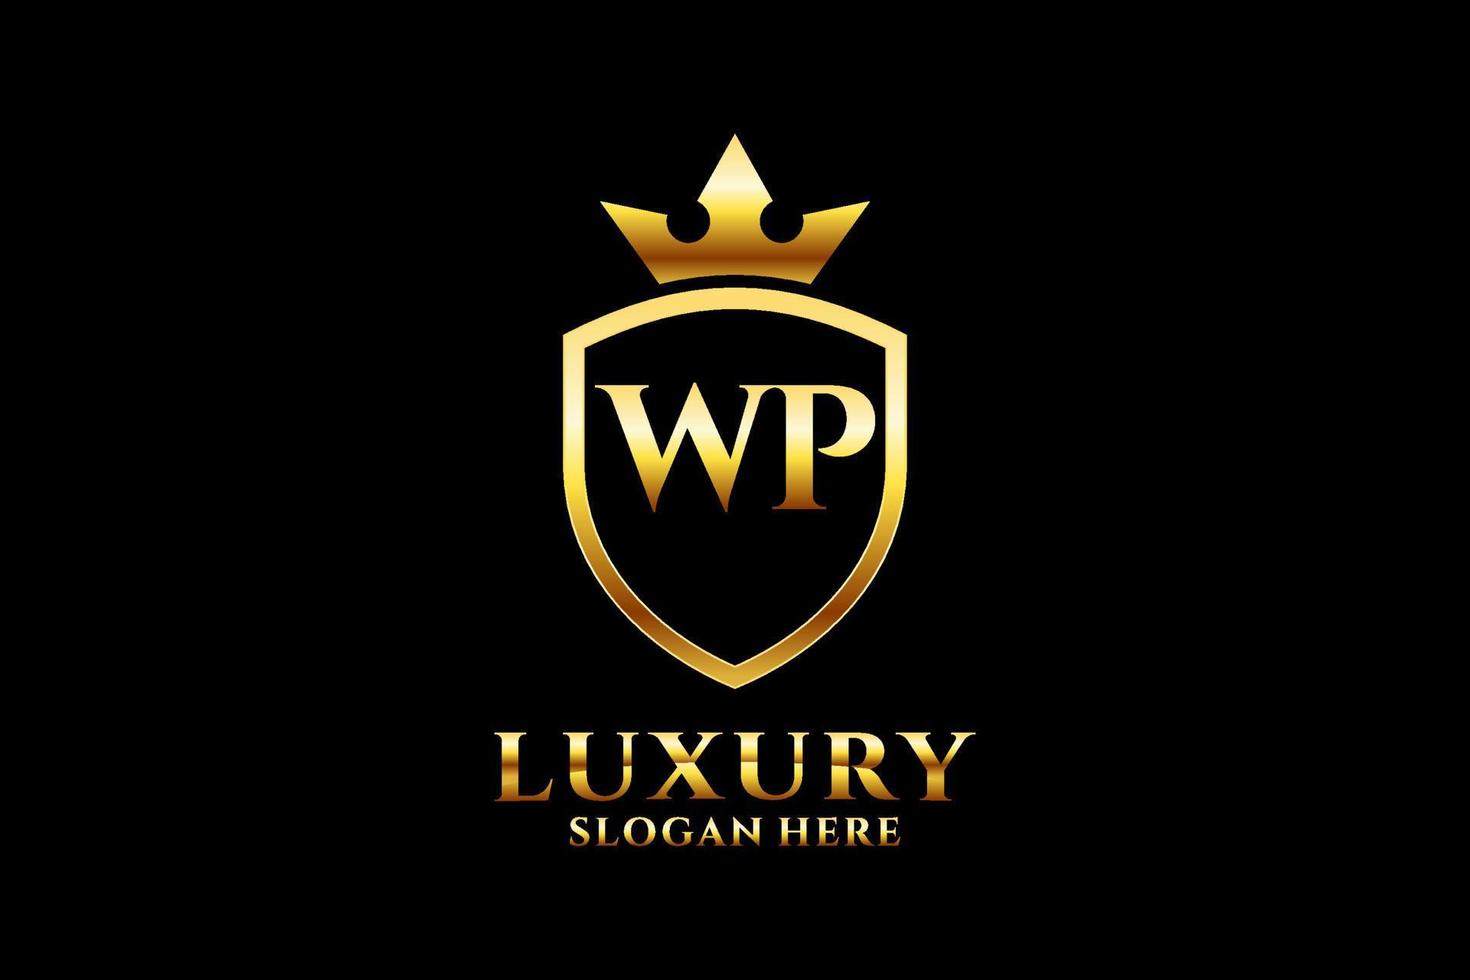 logotipo de monograma de lujo inicial wp elegante o plantilla de insignia con pergaminos y corona real - perfecto para proyectos de marca de lujo vector